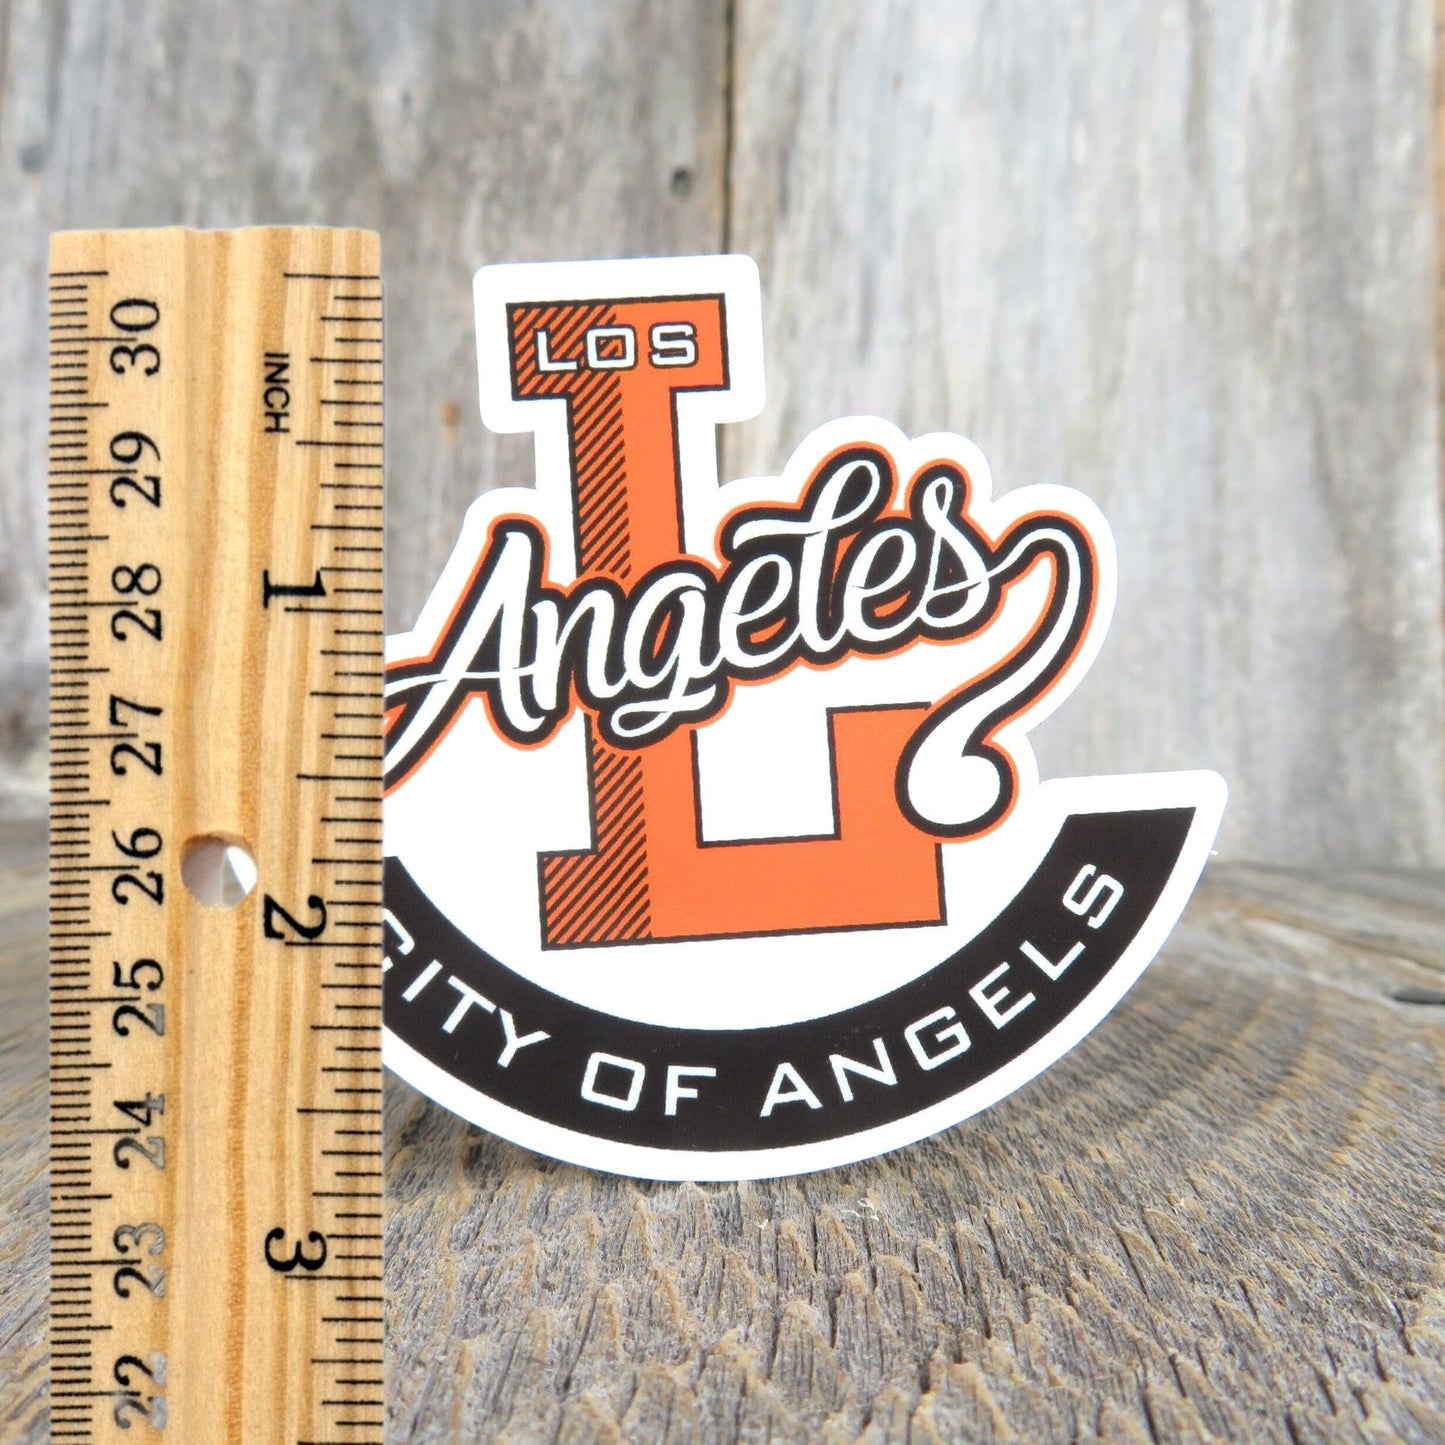 Los Angeles City of Angels Sticker California Orange Black Waterproof Travel Souvenir Hometown Pride